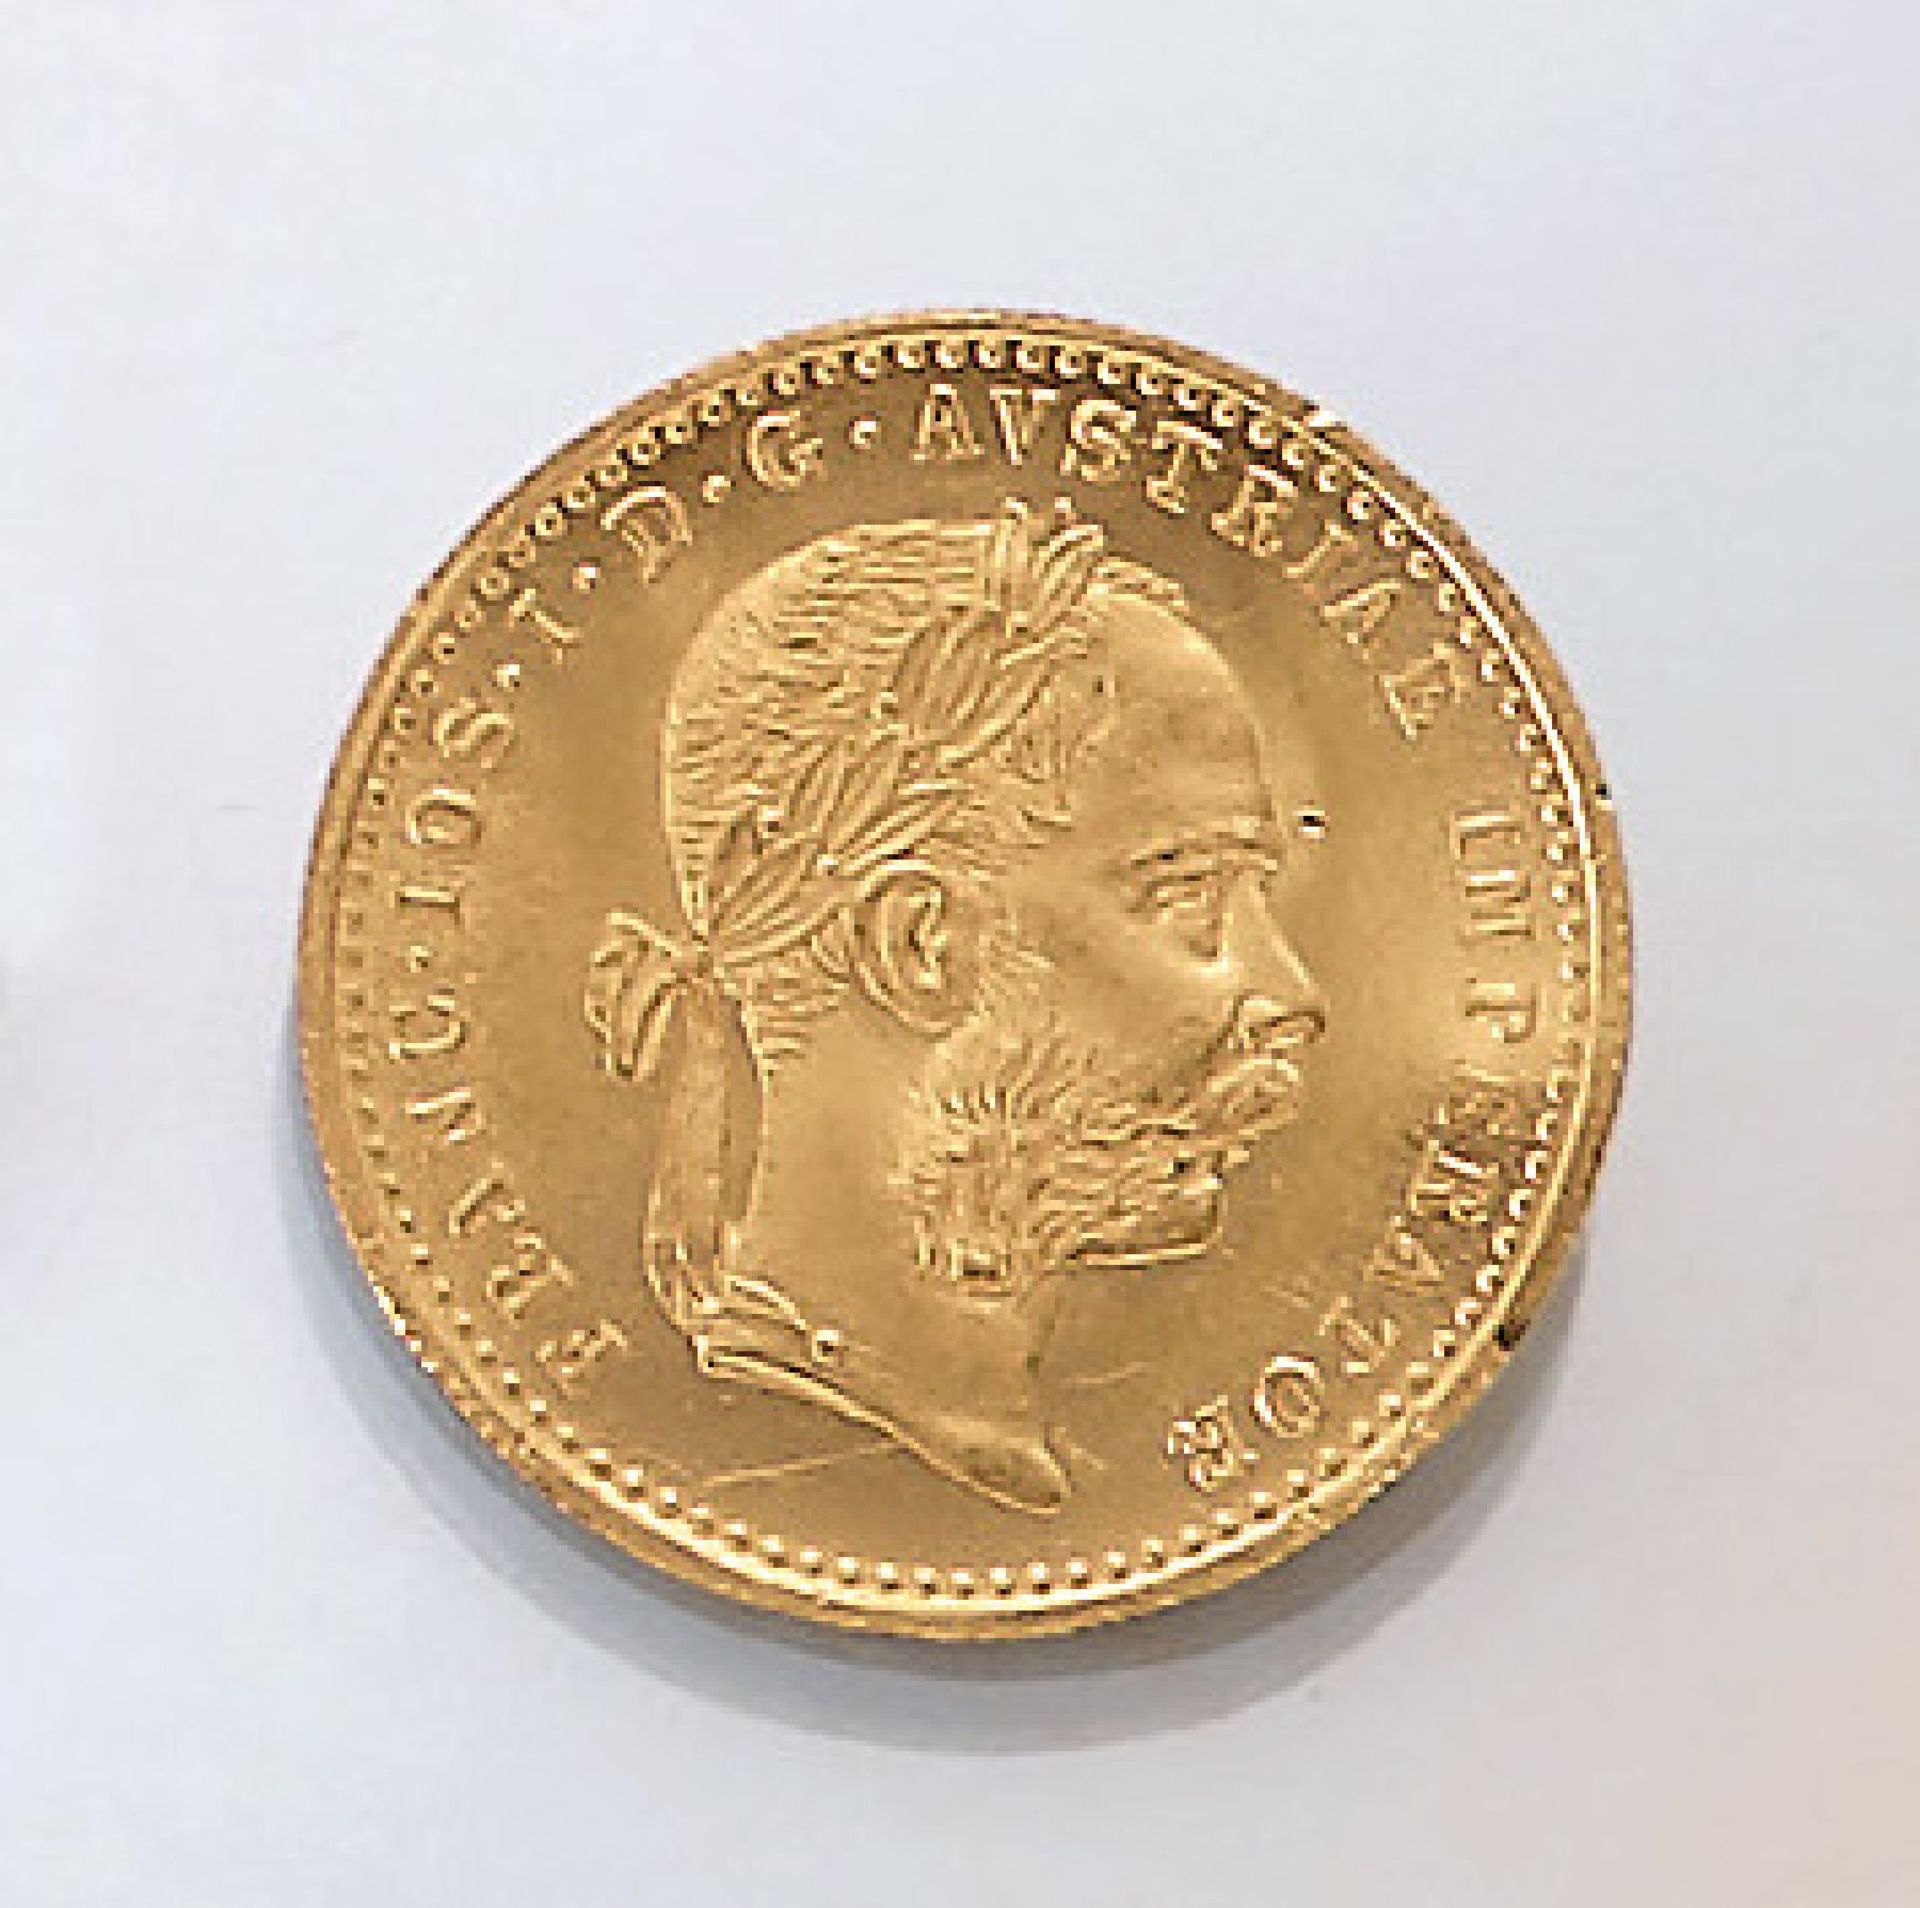 Goldmünze, 1 Dukat, Österreich-Ungarn, 1915, Franz Joseph I., offizielle Nachprägung